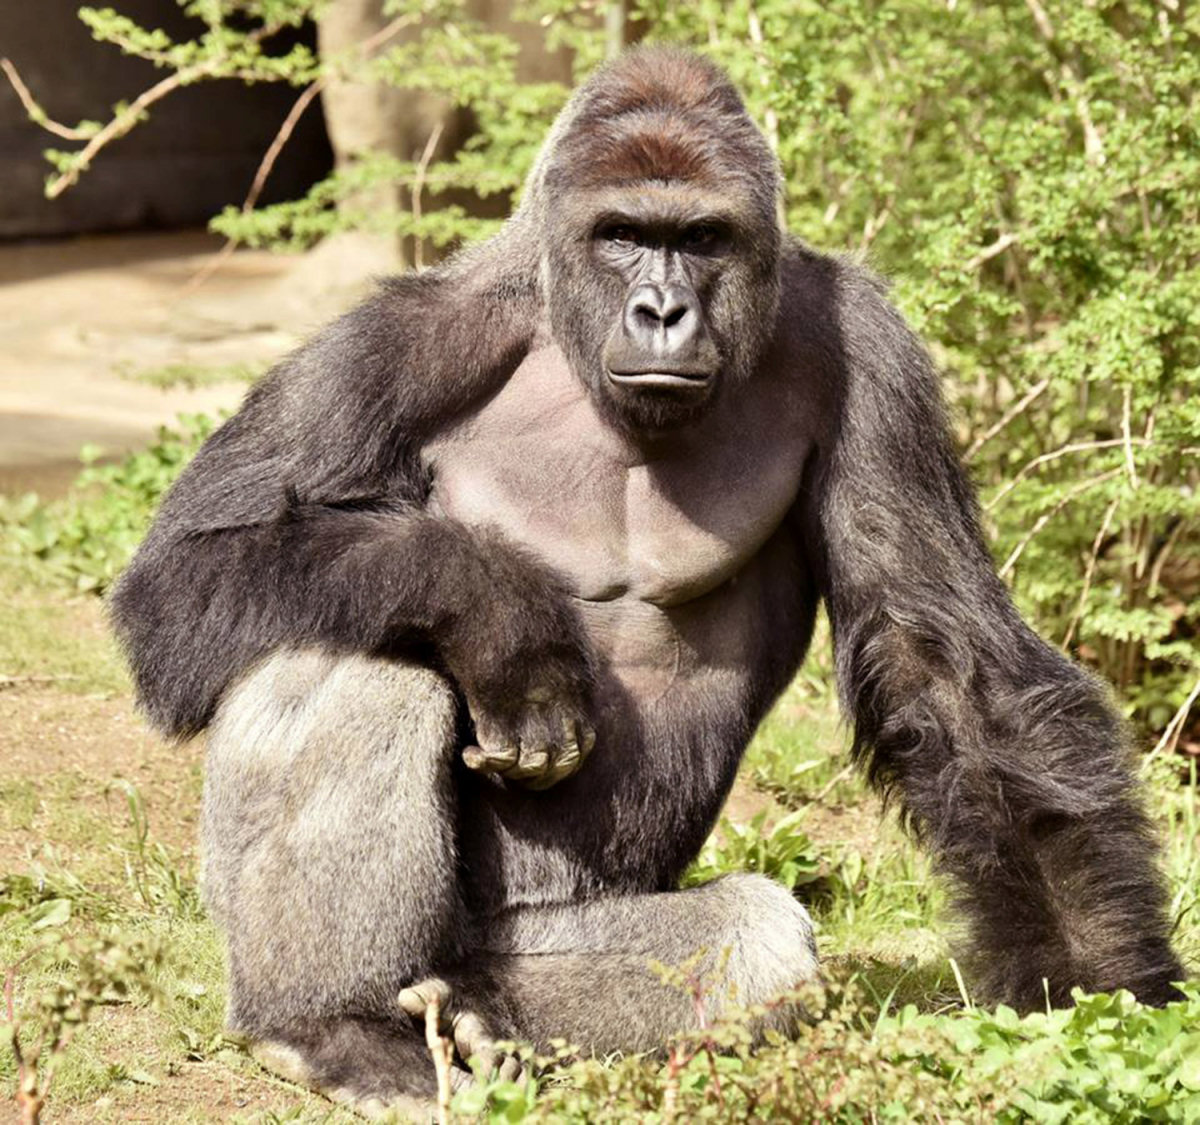 Novo vídeo mostra que o gorila estava dando a mão ao menino antes de ser disparado